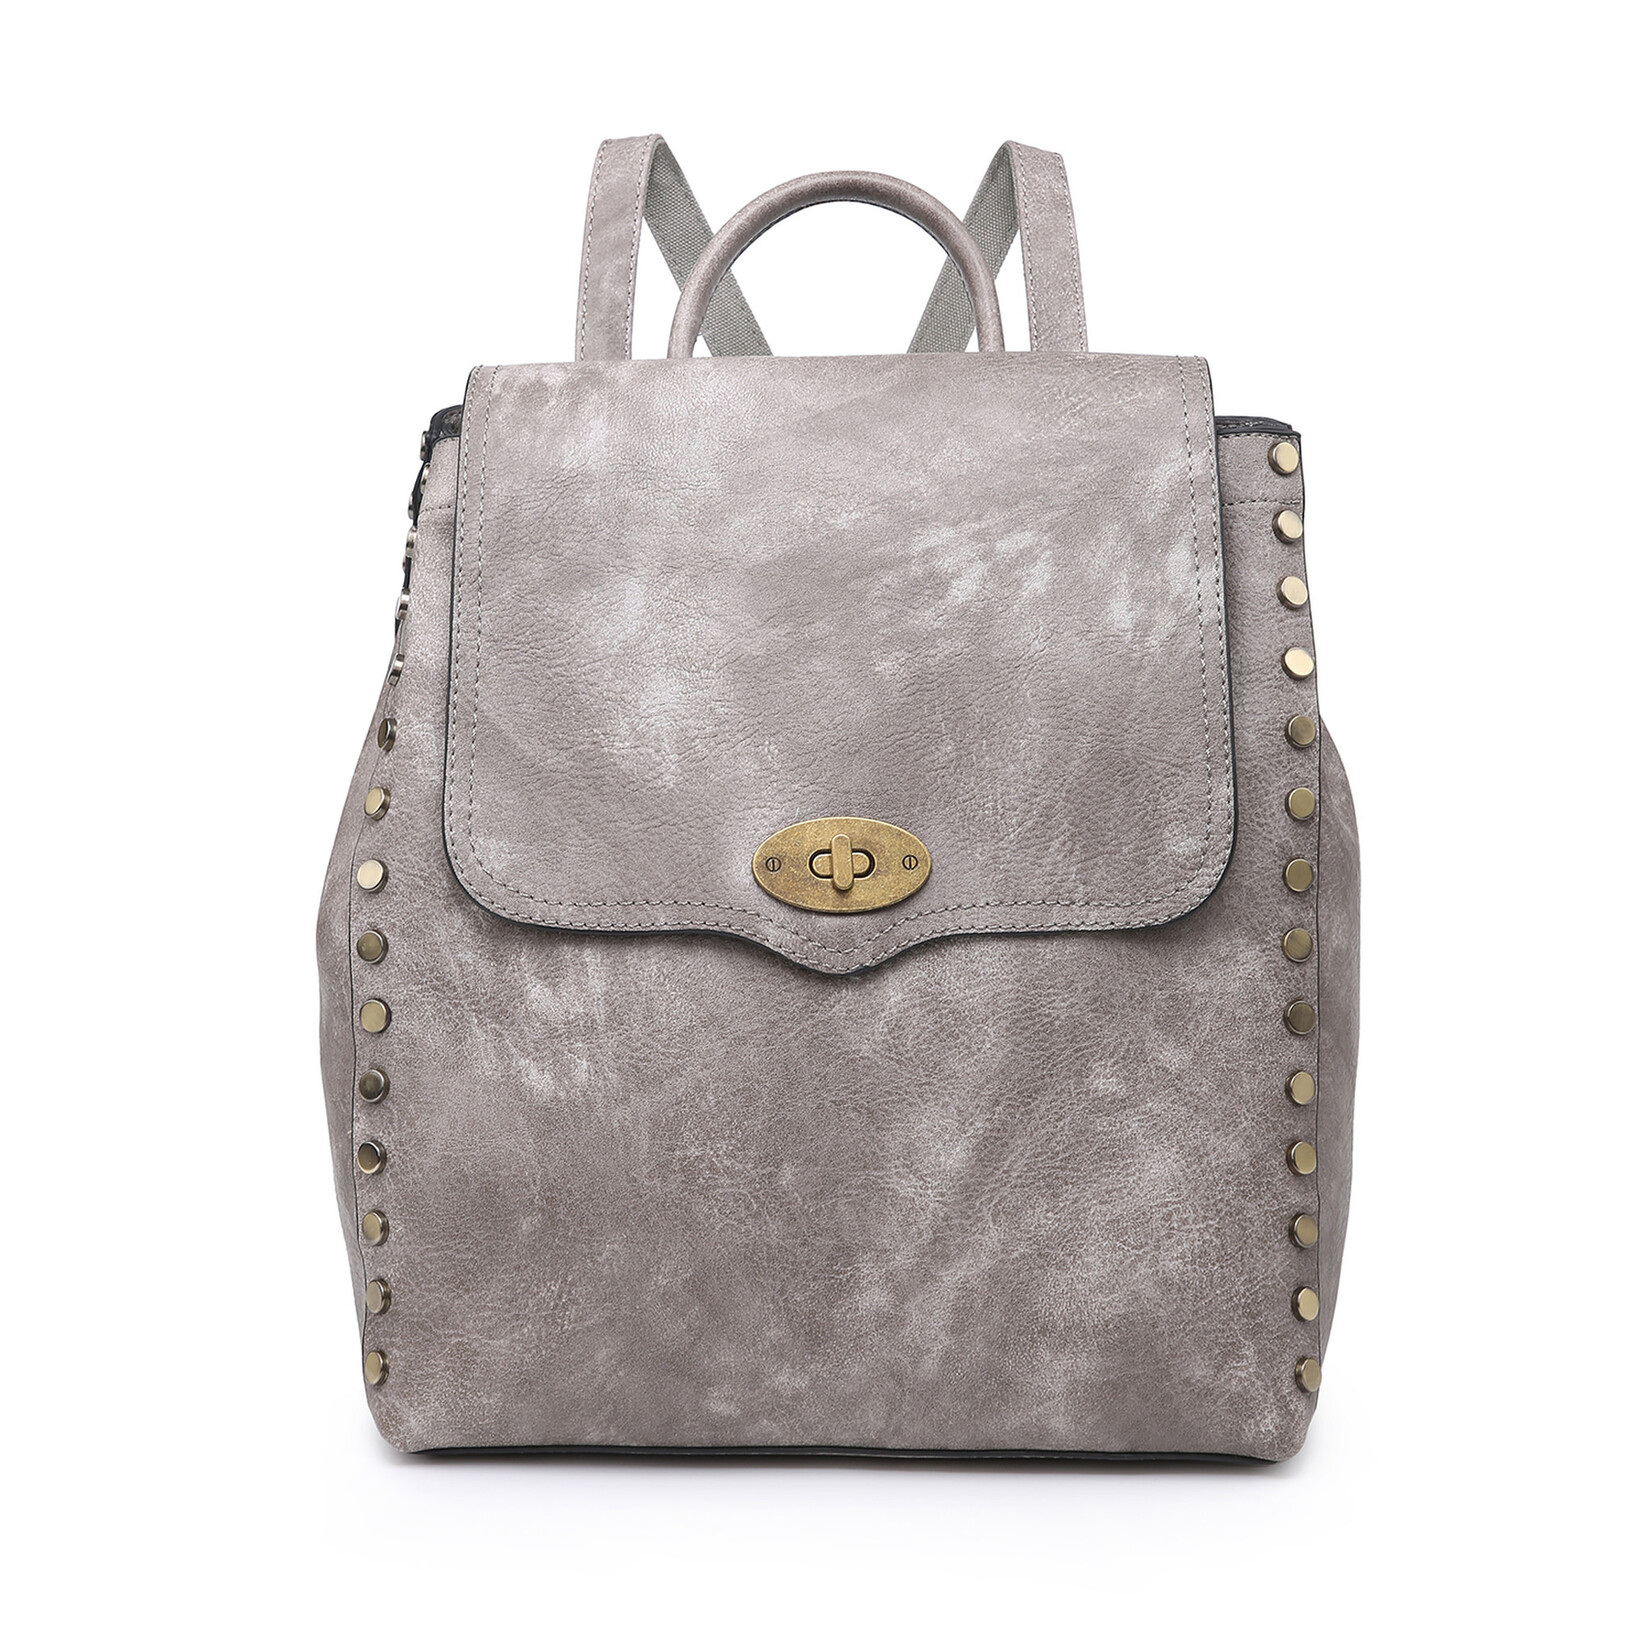 Jen & Co Jen & Co Bex Backpack Grey M1841